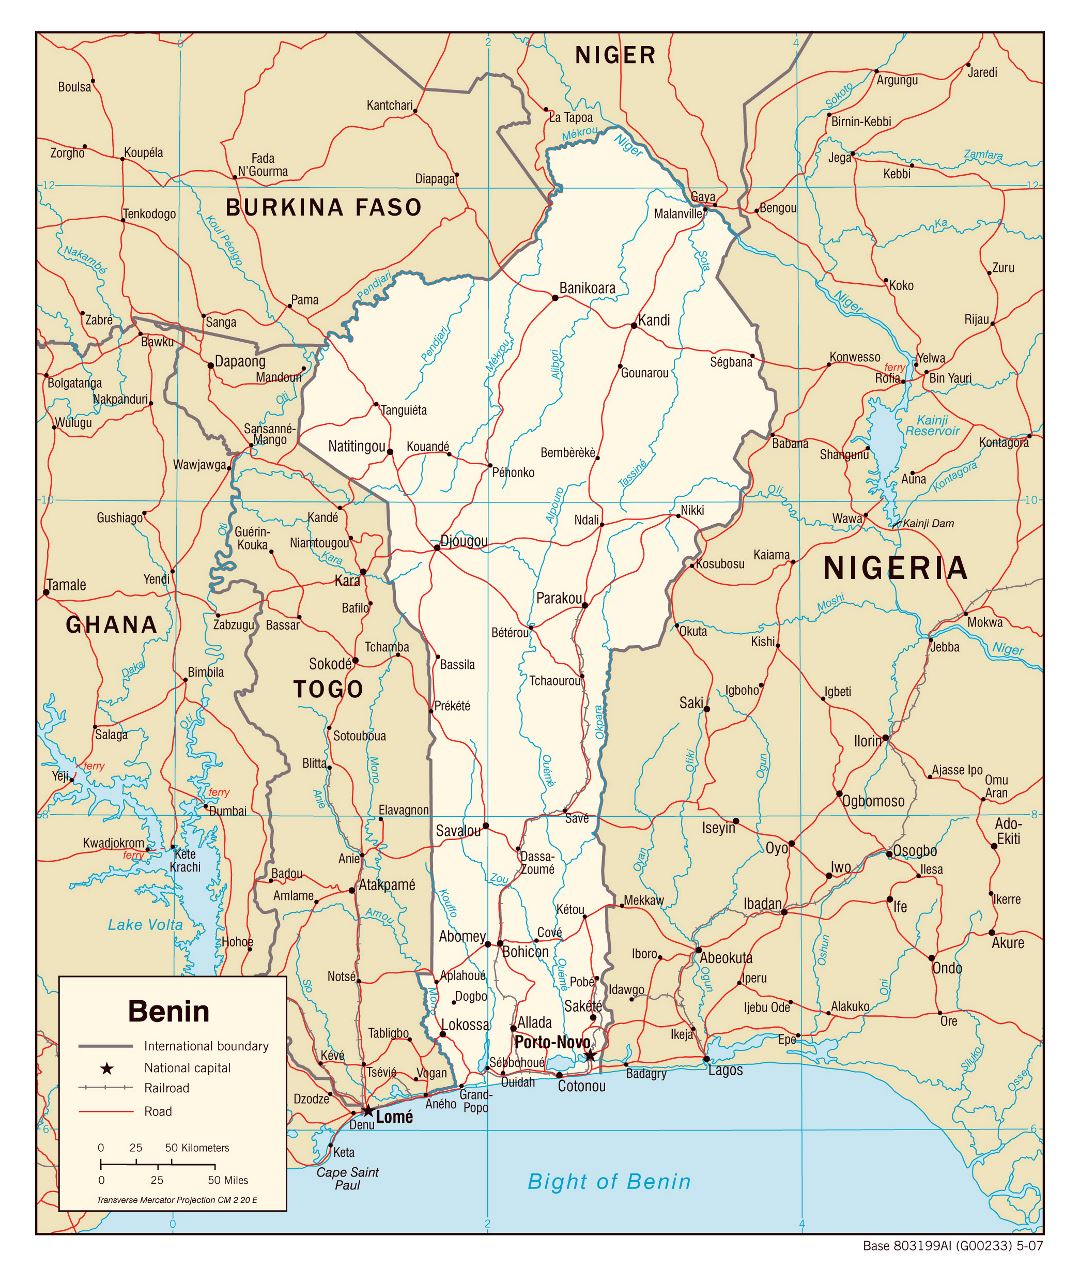 Большая детальная политическая карта Бенина с автодорогами, железными дорогами и городами - 2007